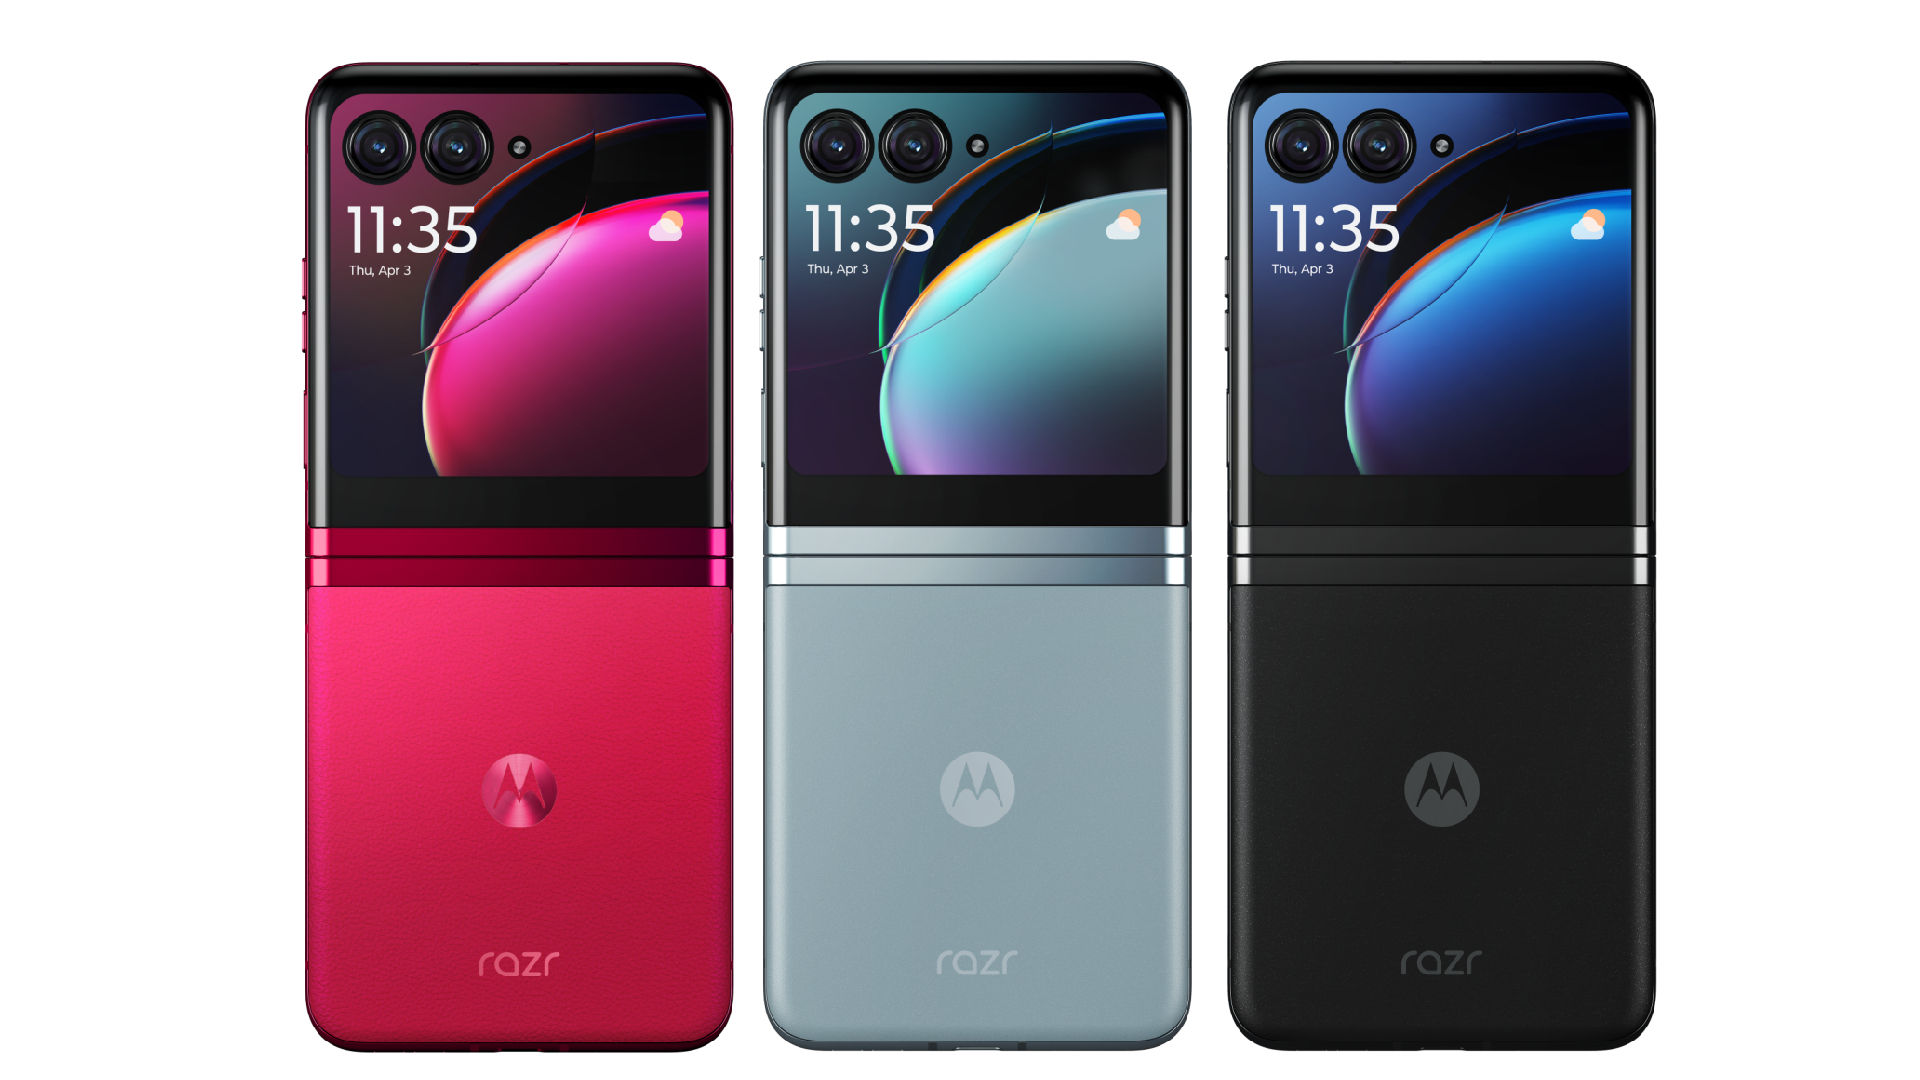 Motorola Razr And Razr Plus Specs, Features, Launch Price And More